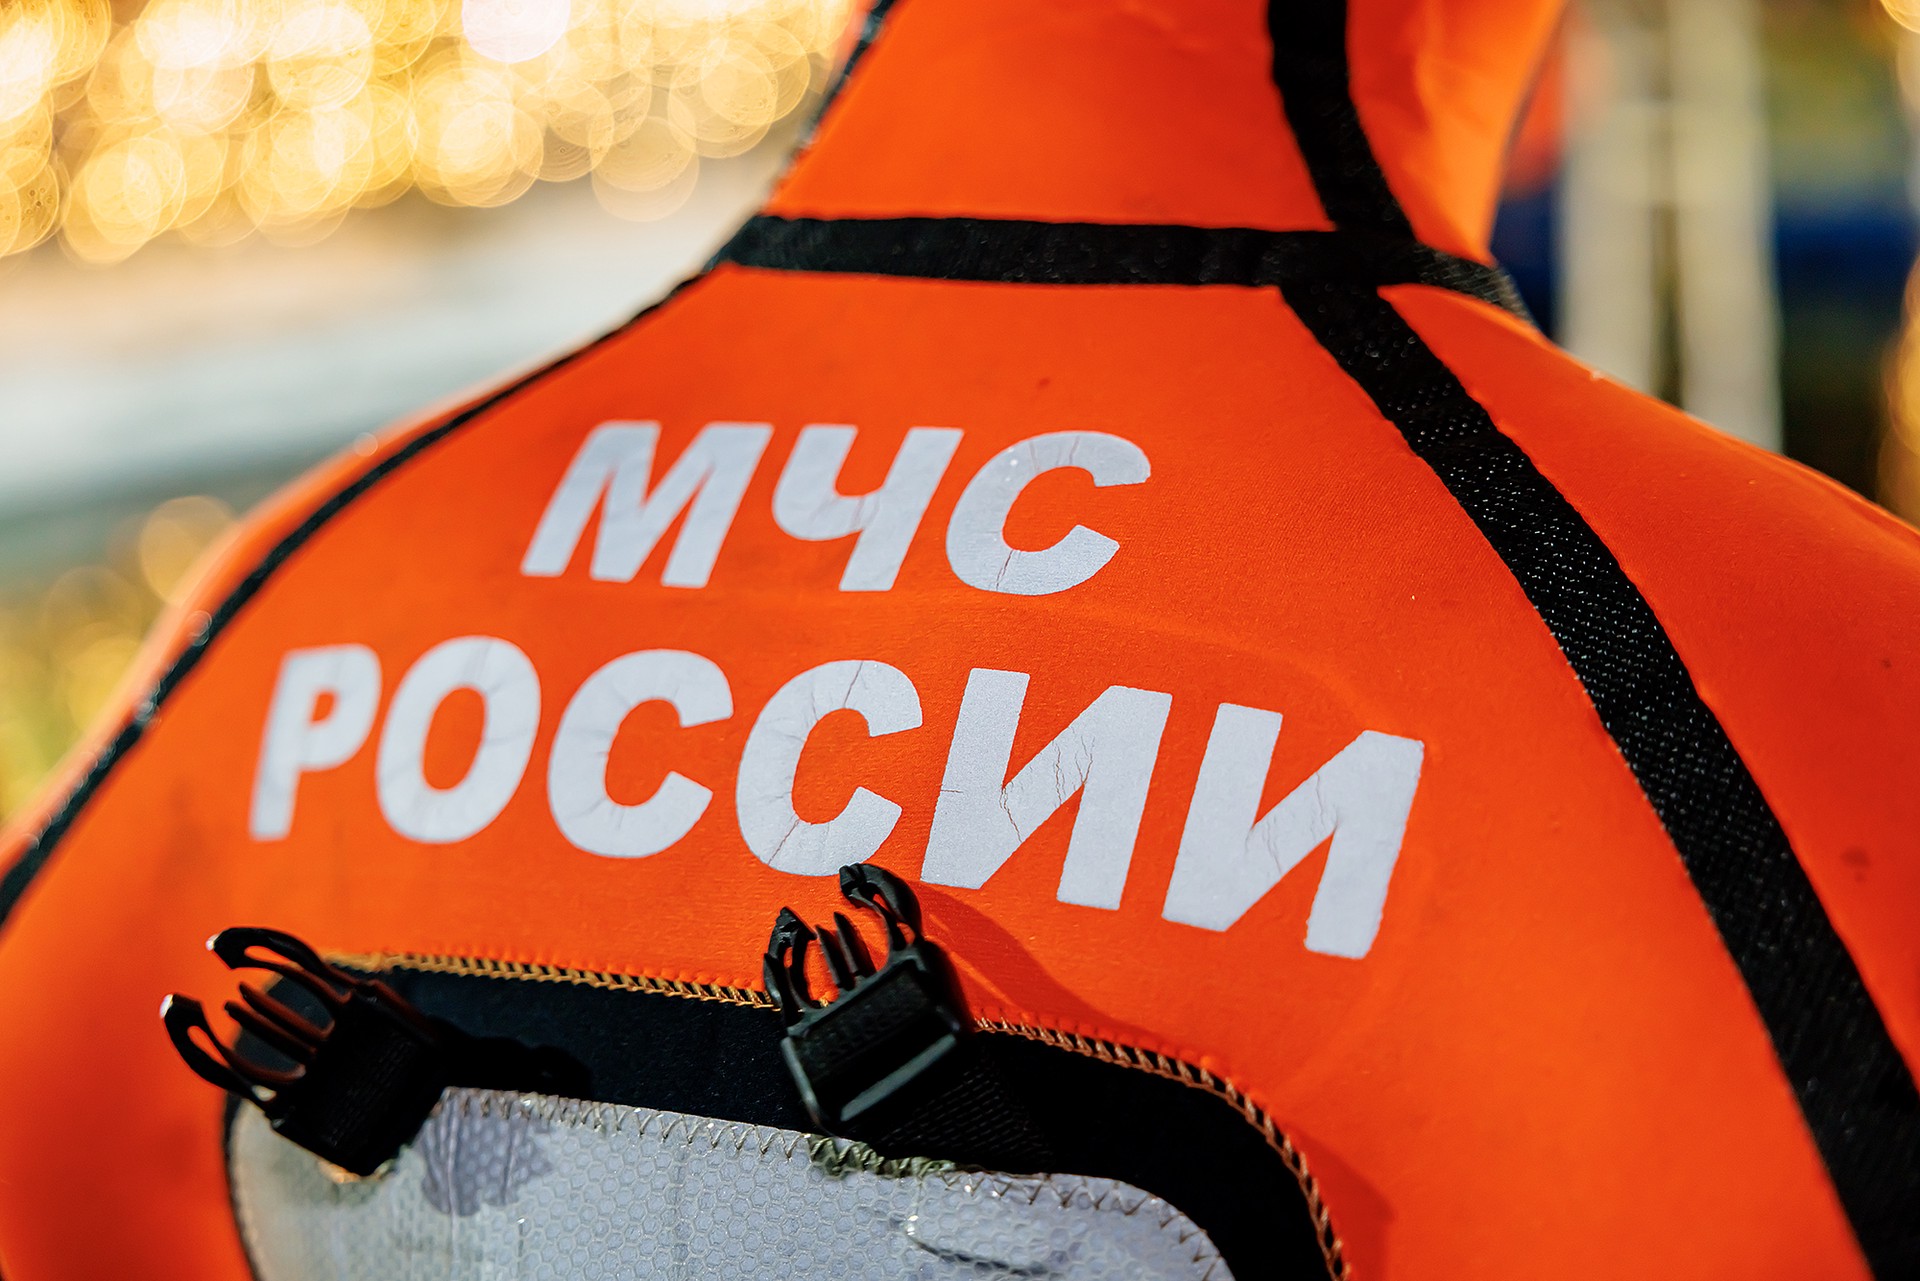 Гидроплан потерпел крушение при взлёте в Мурманской области, пилот погиб